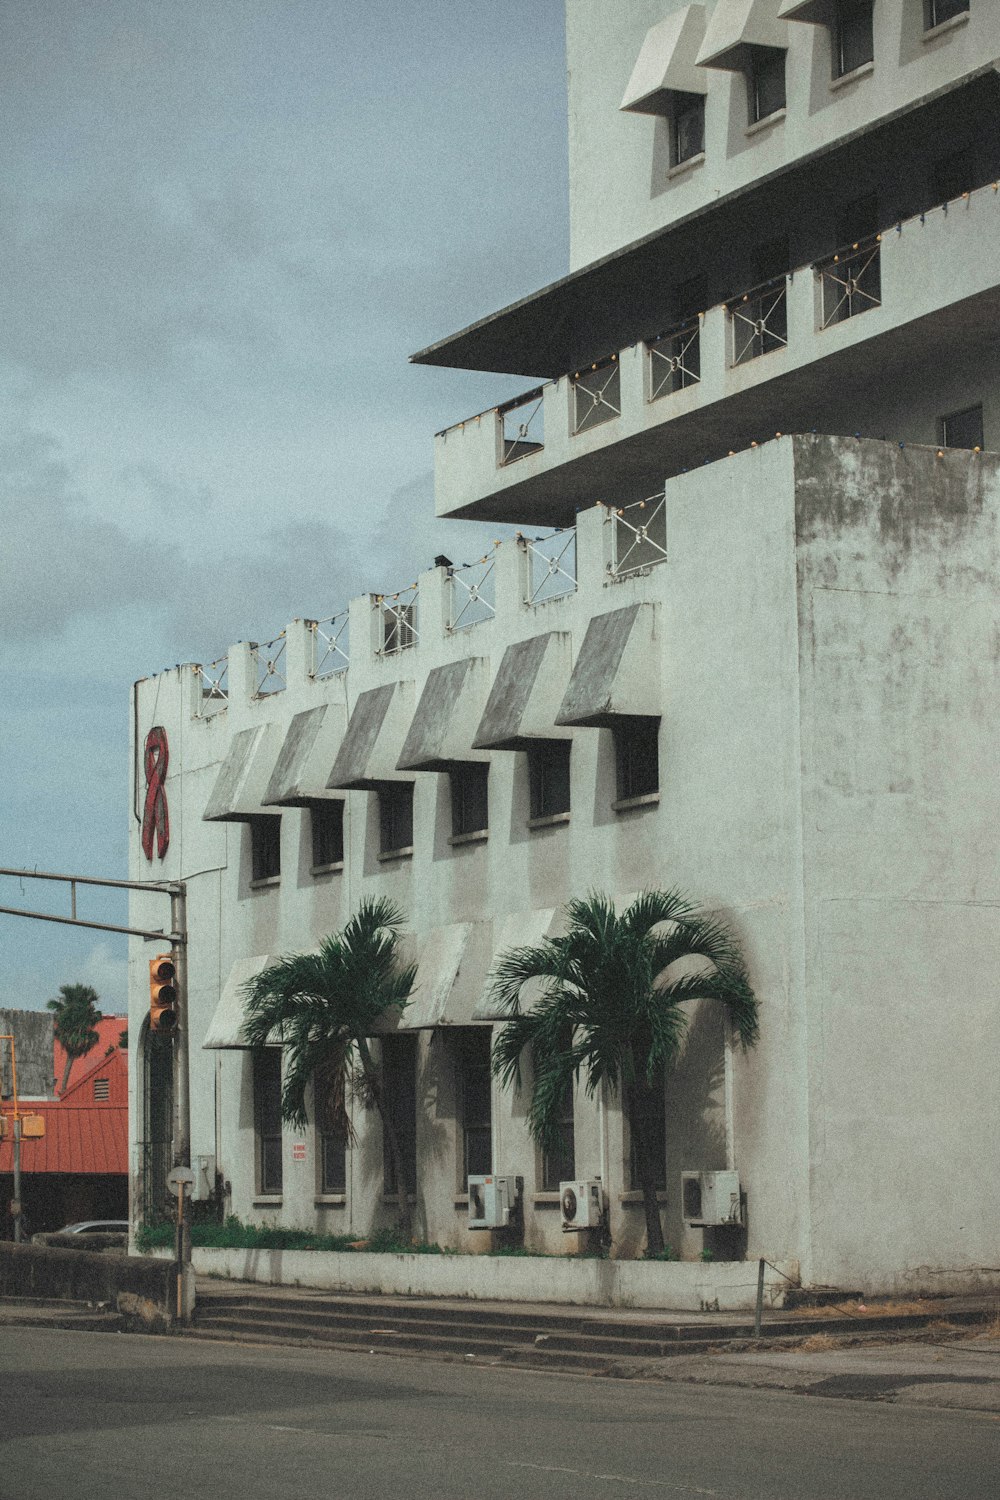 Edificio de hormigón blanco cerca de palmeras durante el día